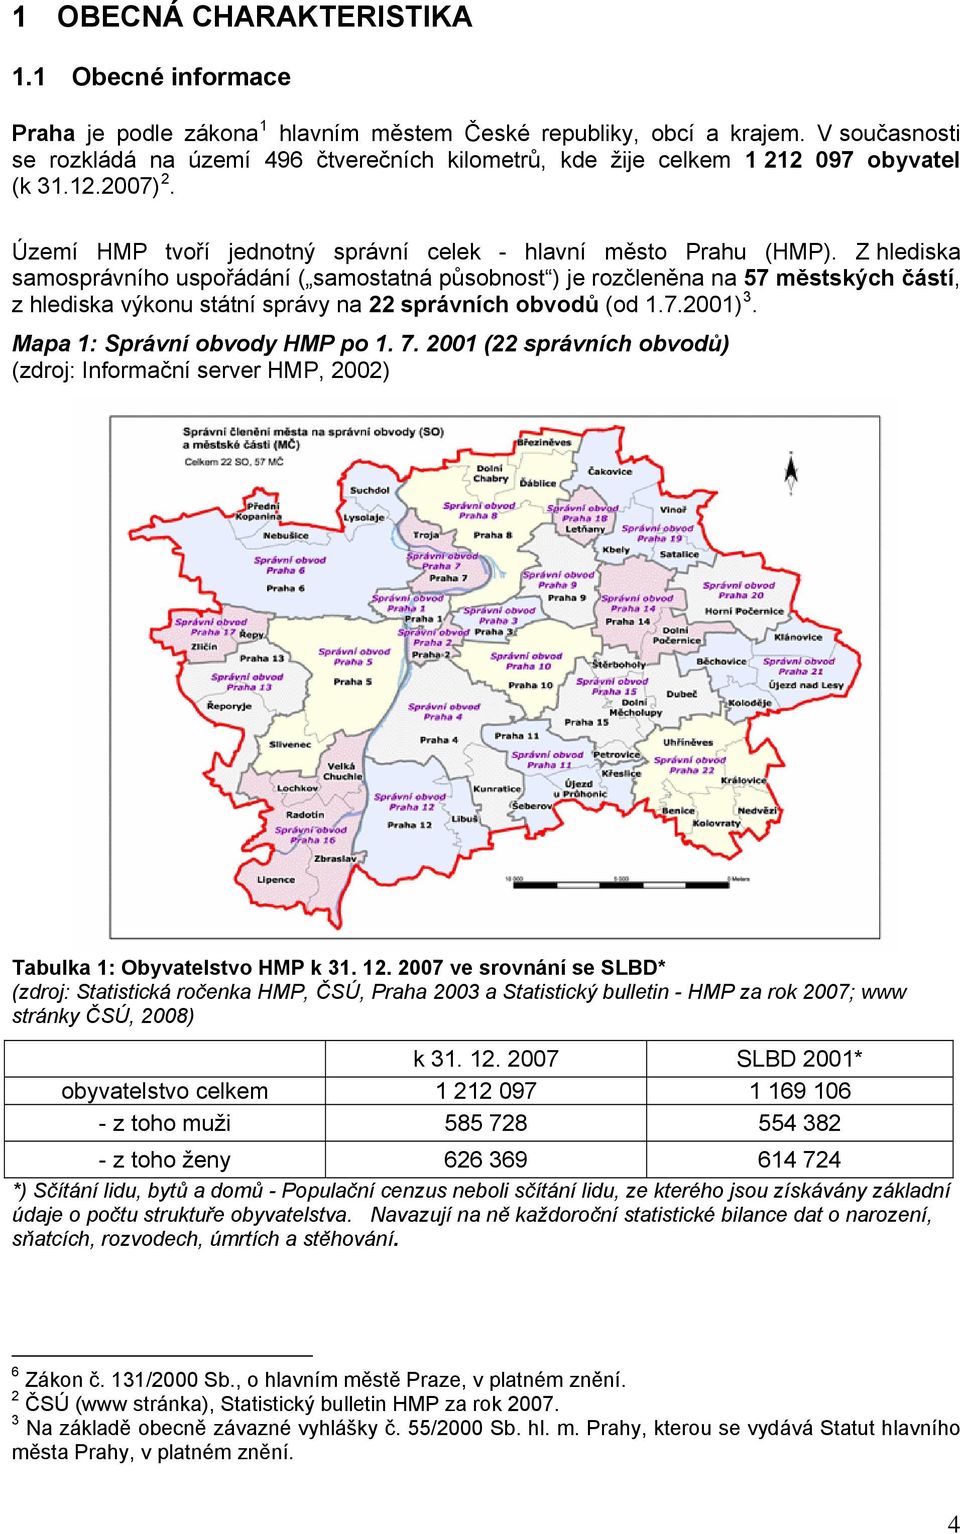 Z hlediska samosprávního uspořádání ( samostatná působnost ) je rozčleněna na 57 městských částí, z hlediska výkonu státní správy na 22 správních obvodů (od 1.7.2001) 3.